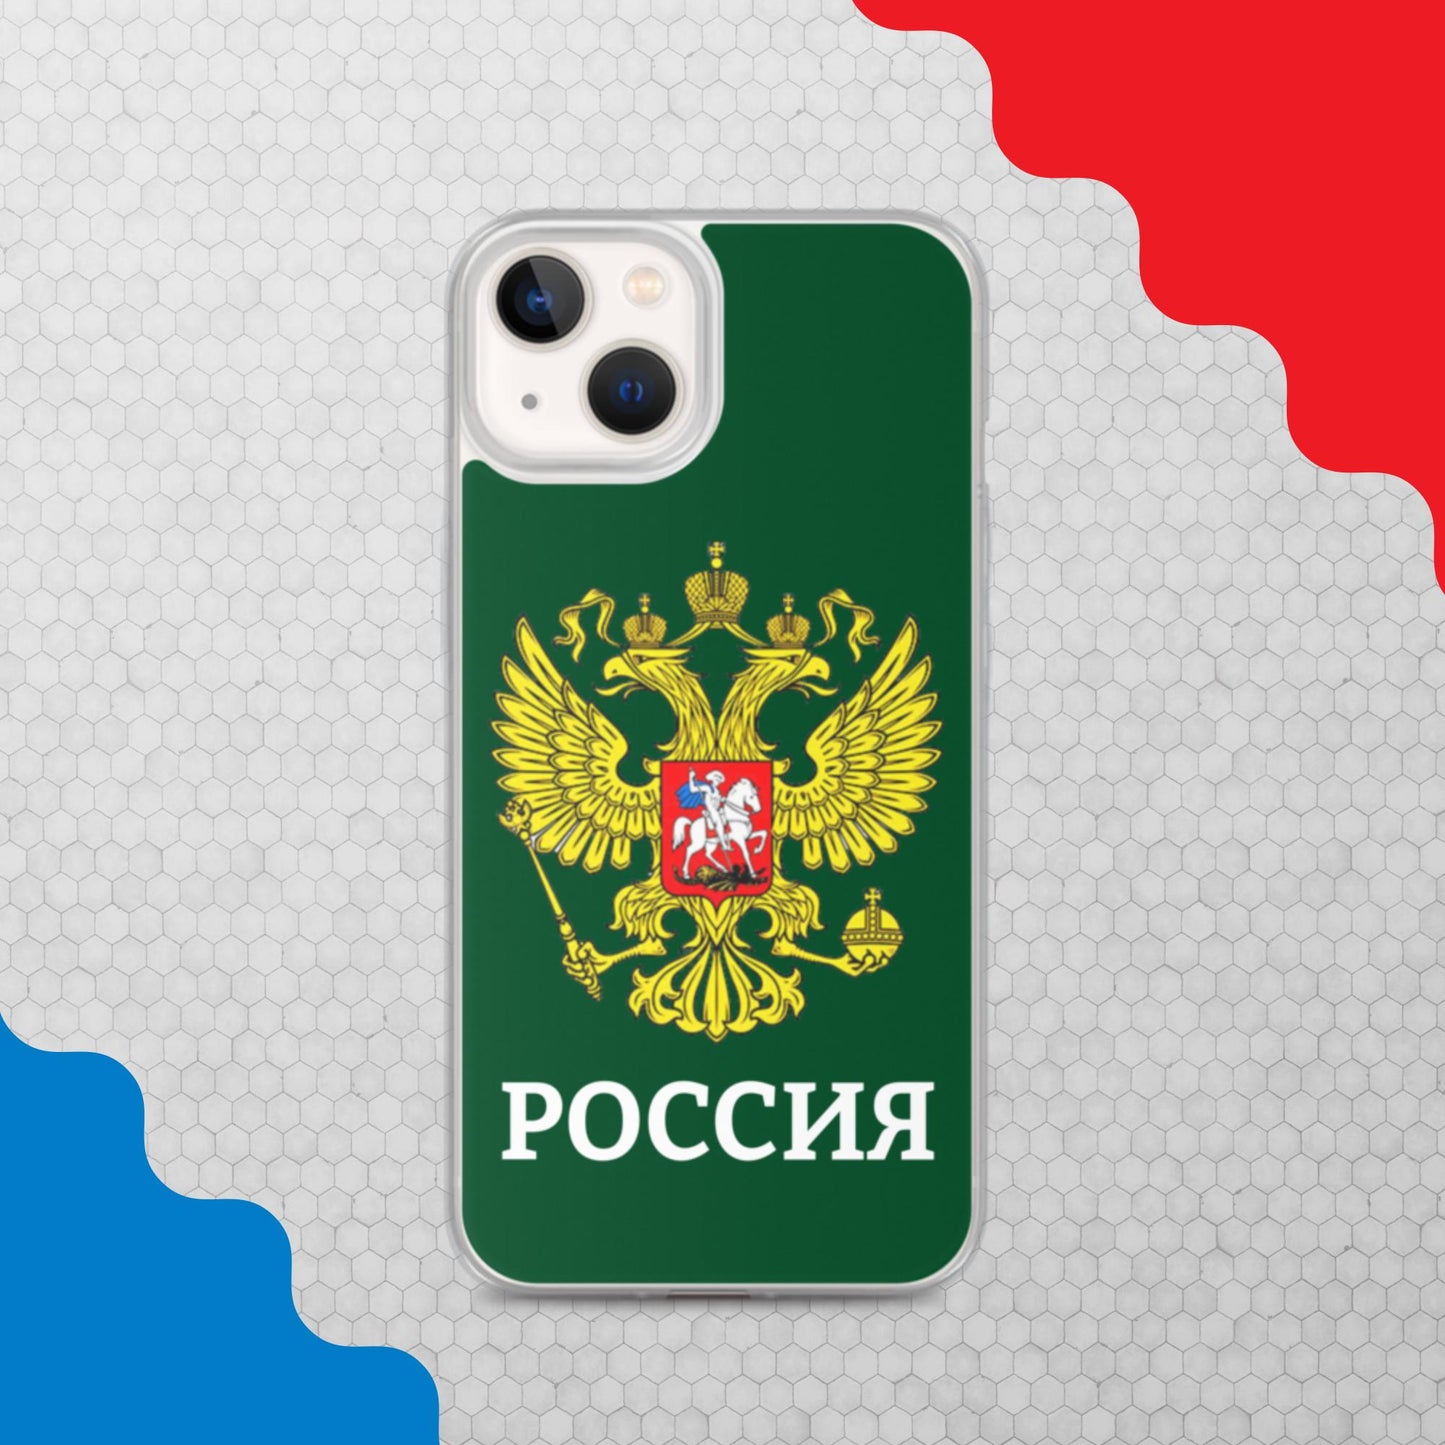 iPhone-Hülle mit Russland-Wappen in grün (alle Modelle)